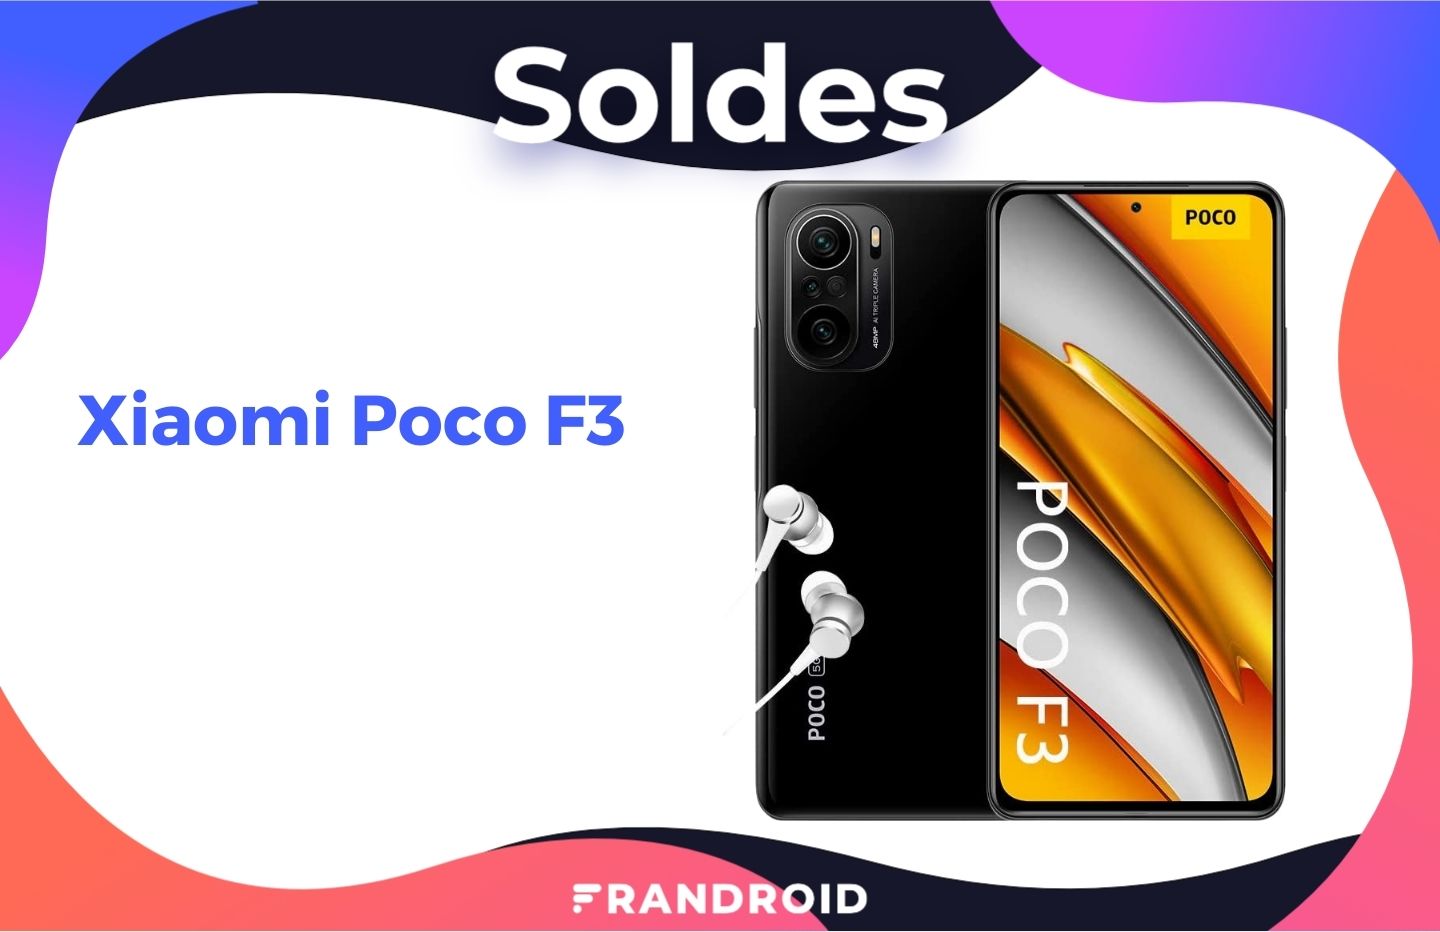 Le Xiaomi Poco F3 est à un super prix grâce à un code promo spécial soldes - Frandroid